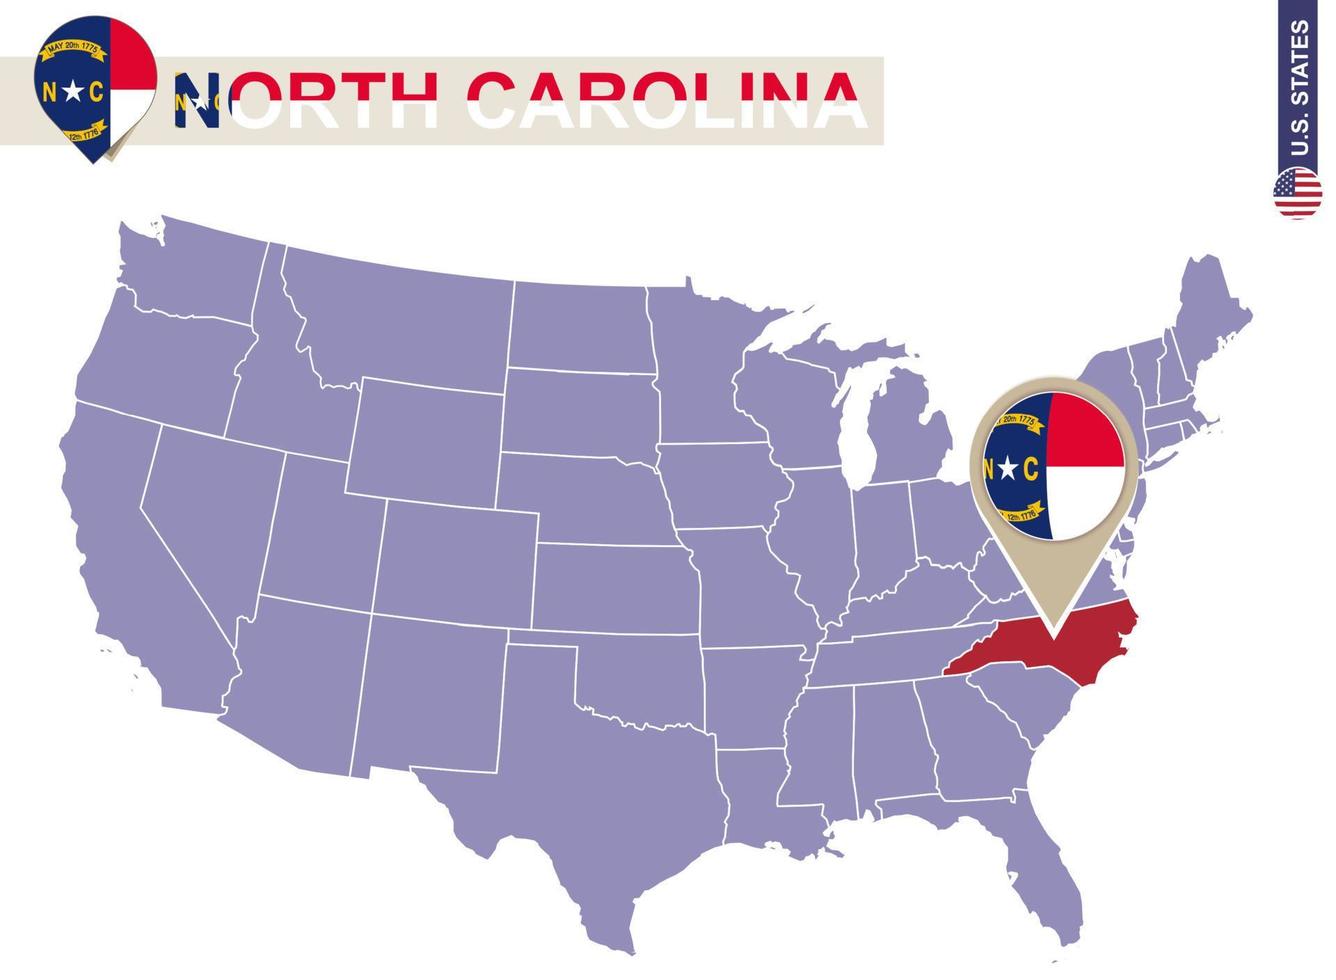 North Carolina State on USA Map. North Carolina flag and map. vector